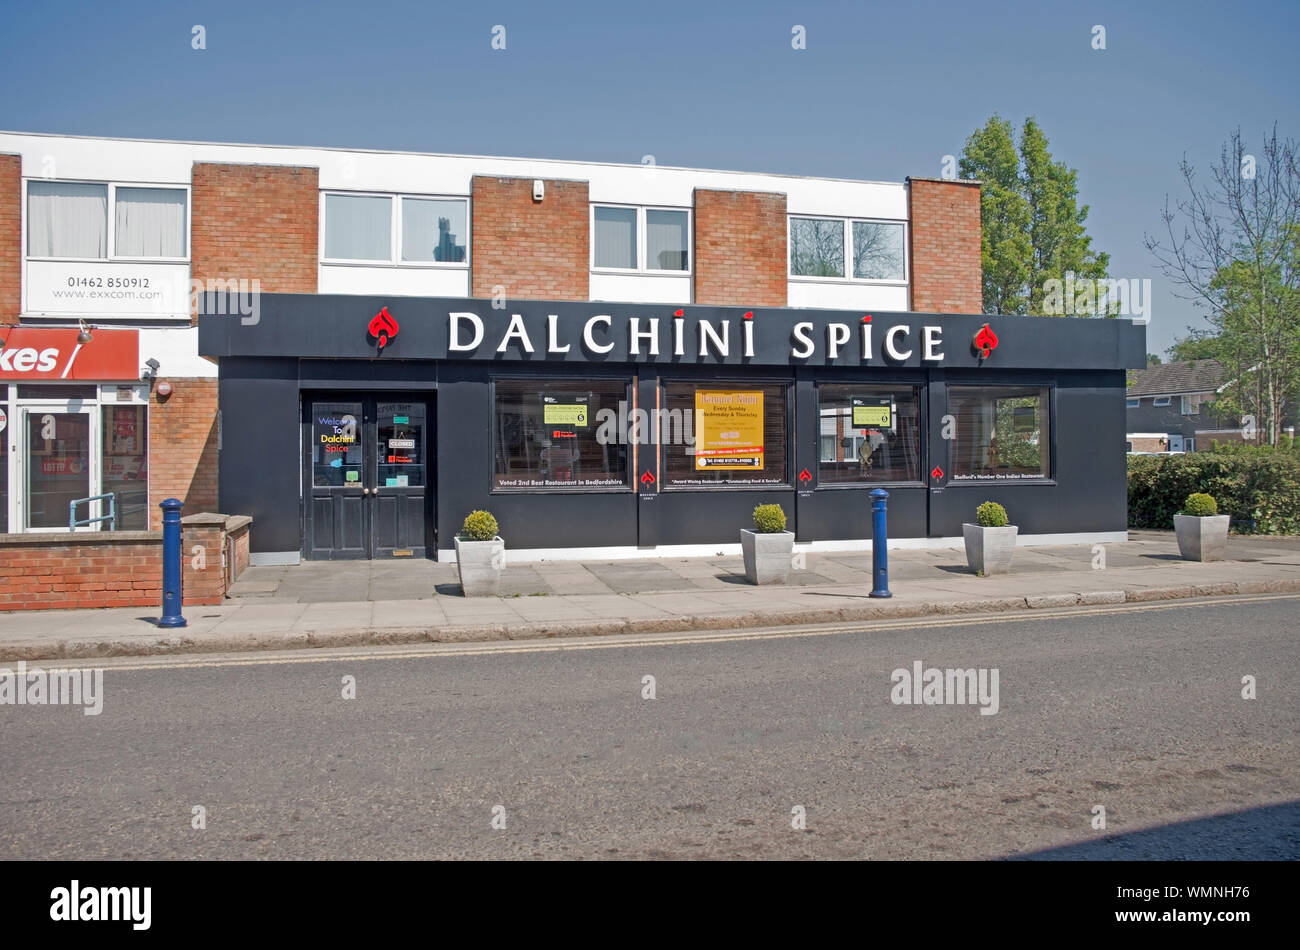 Sheffod Bedfordshire Dalchini Spice Restaiurant Stock Photo